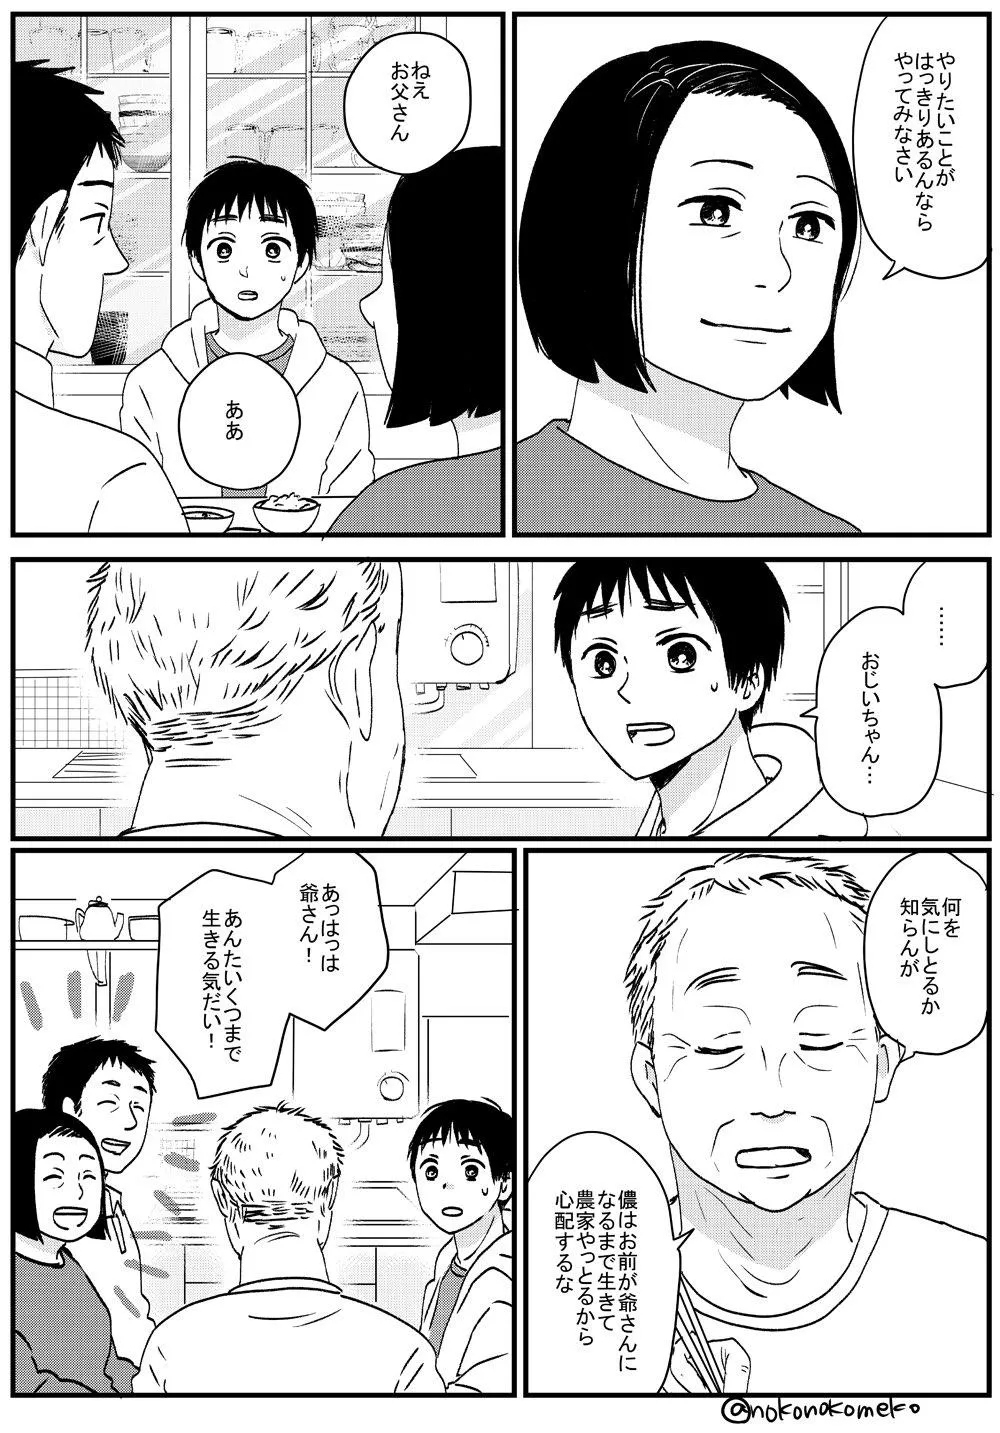 『喋る大根と少年が出会ってツイッターデビューする漫画』28